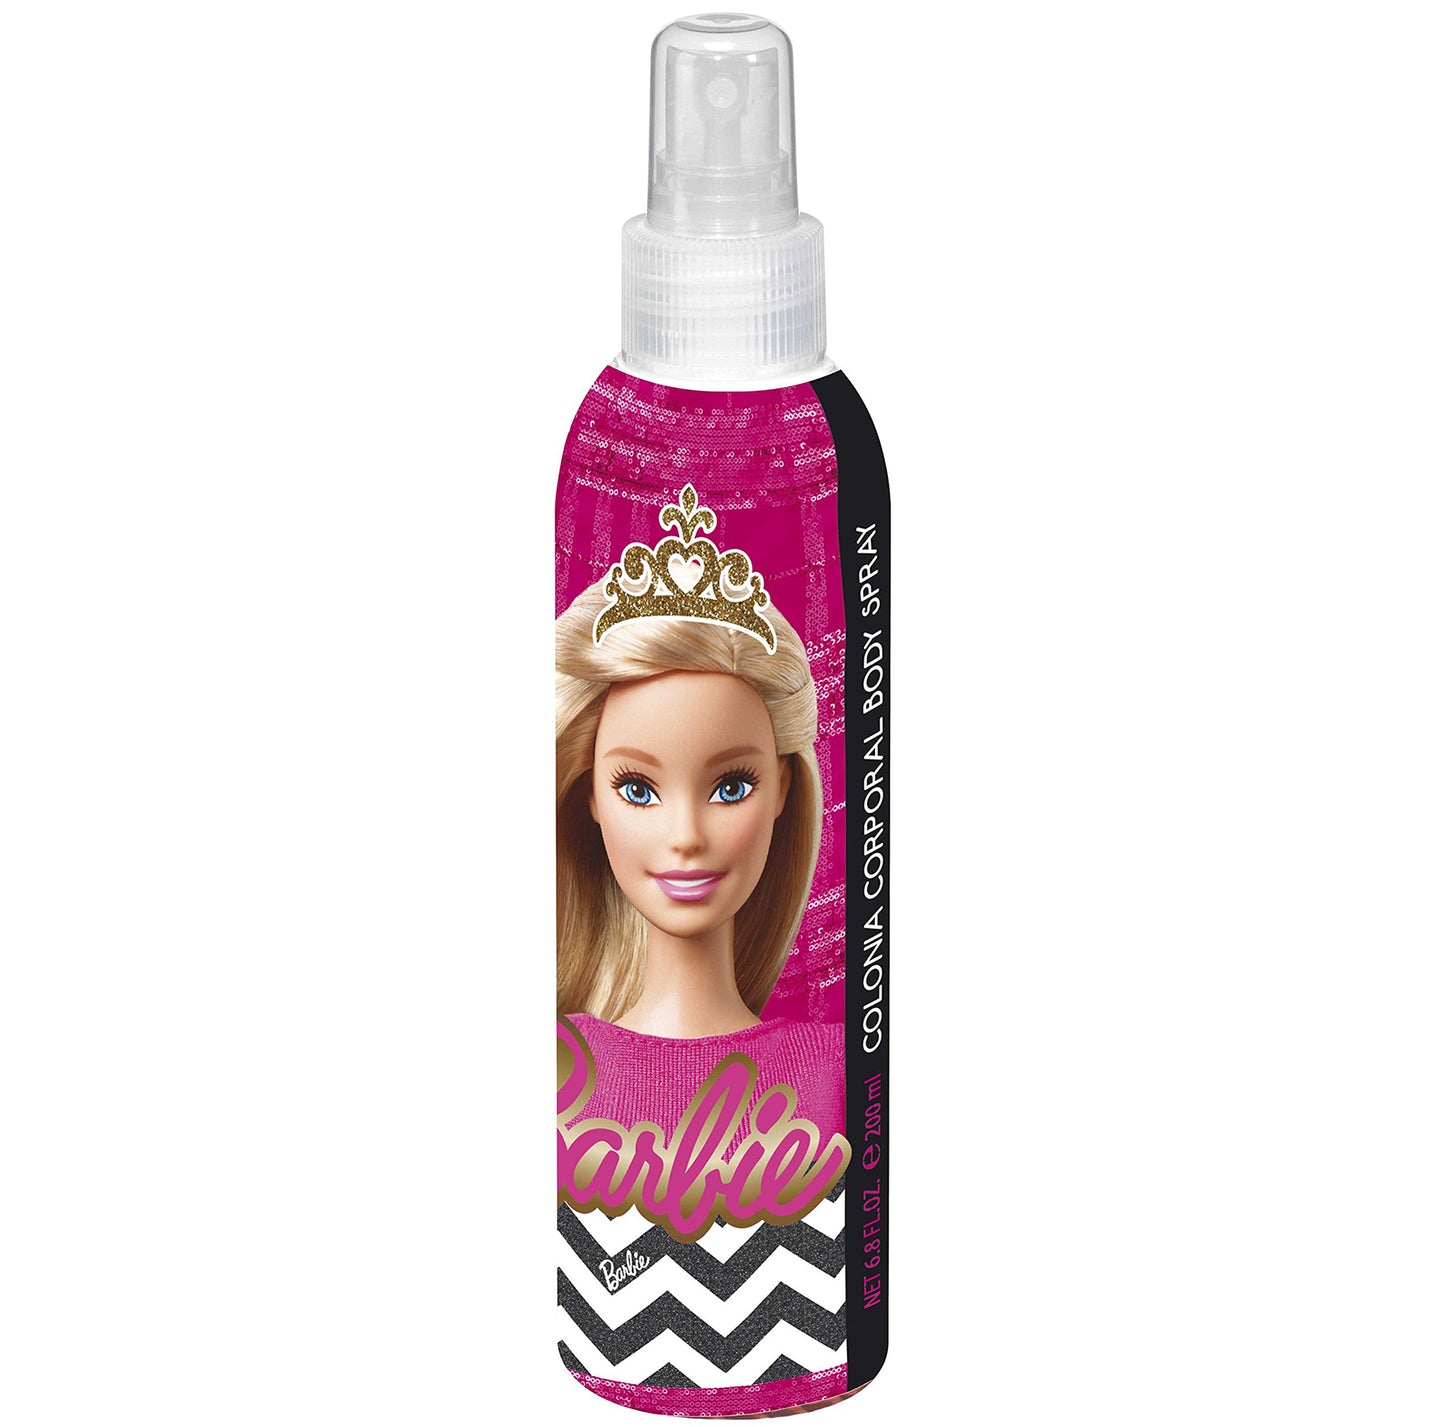 Barbie Body Spray 6.8 oz 200 ml Girls